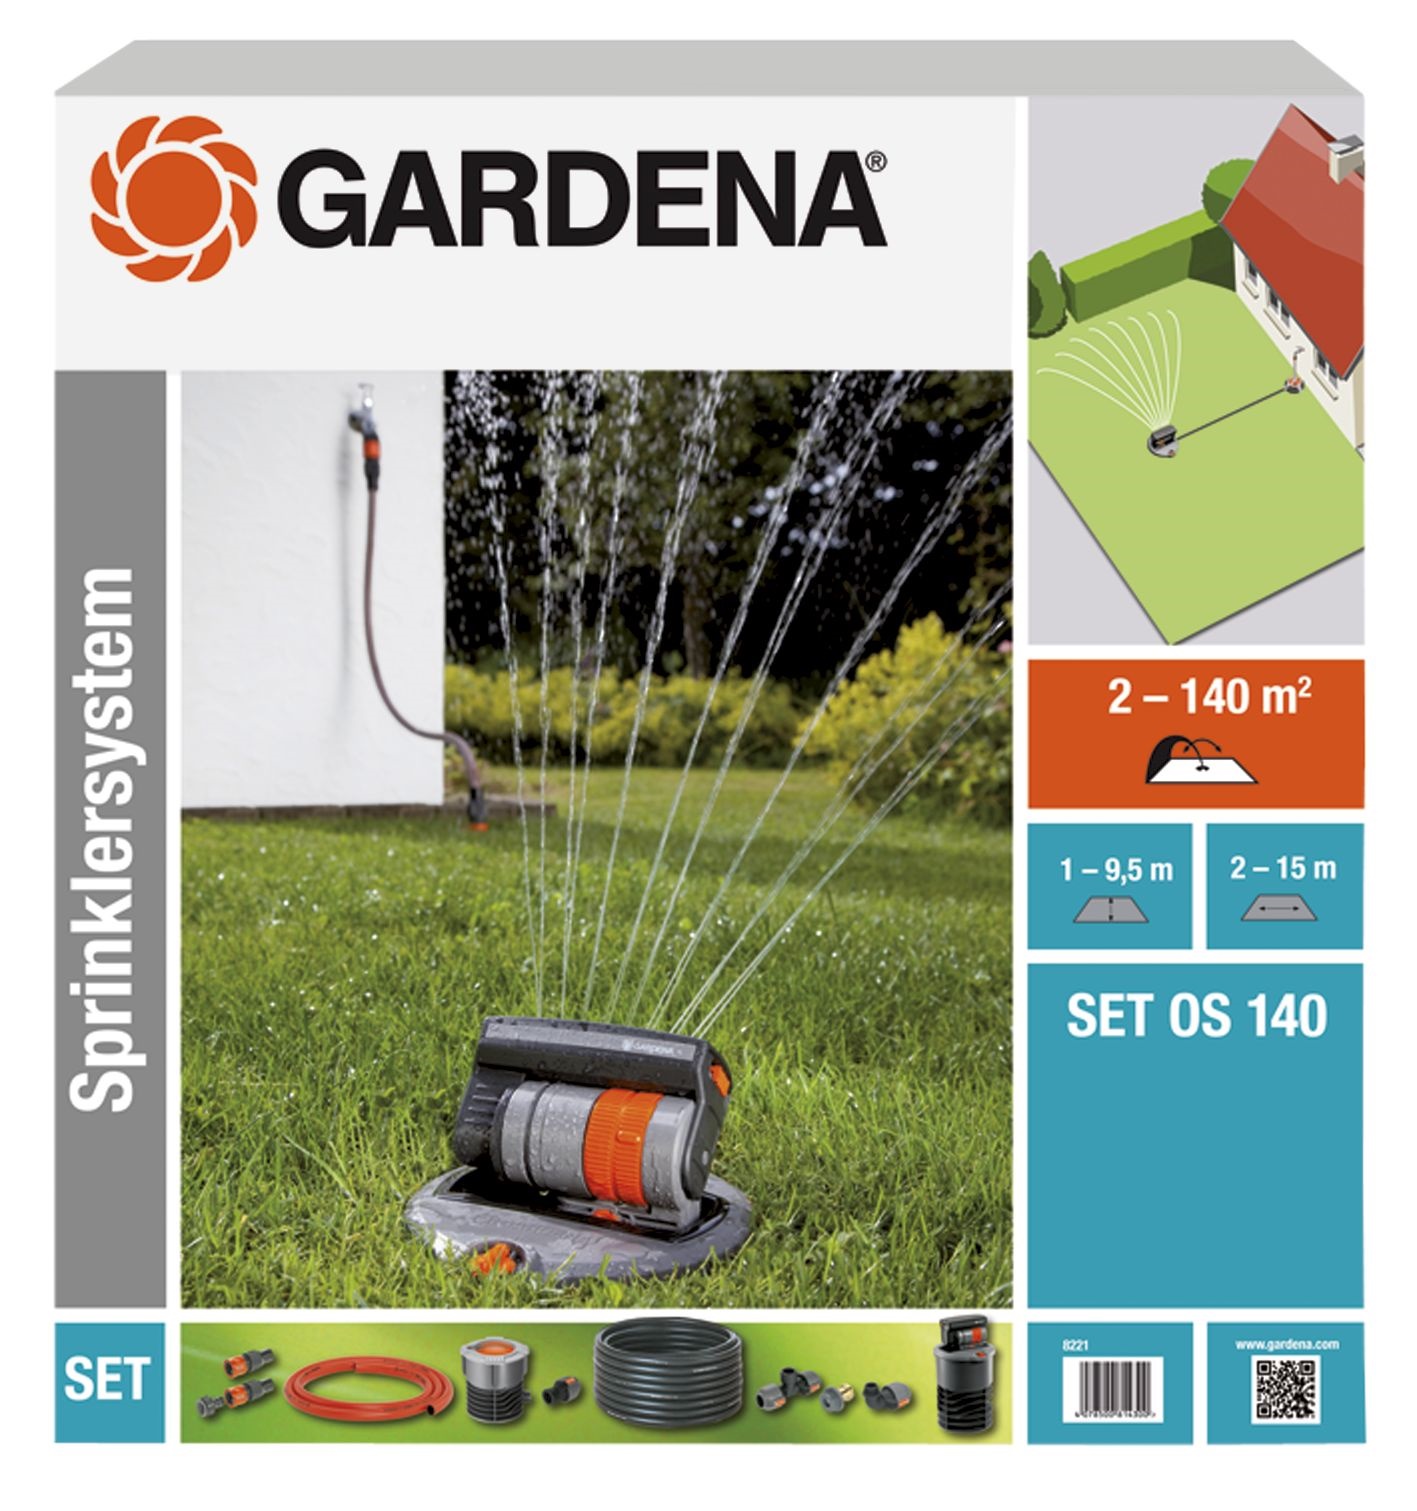 Afbeelding Sprinklersysteem GARDENA met verzonken sproeier os 140 door Haxo.nl